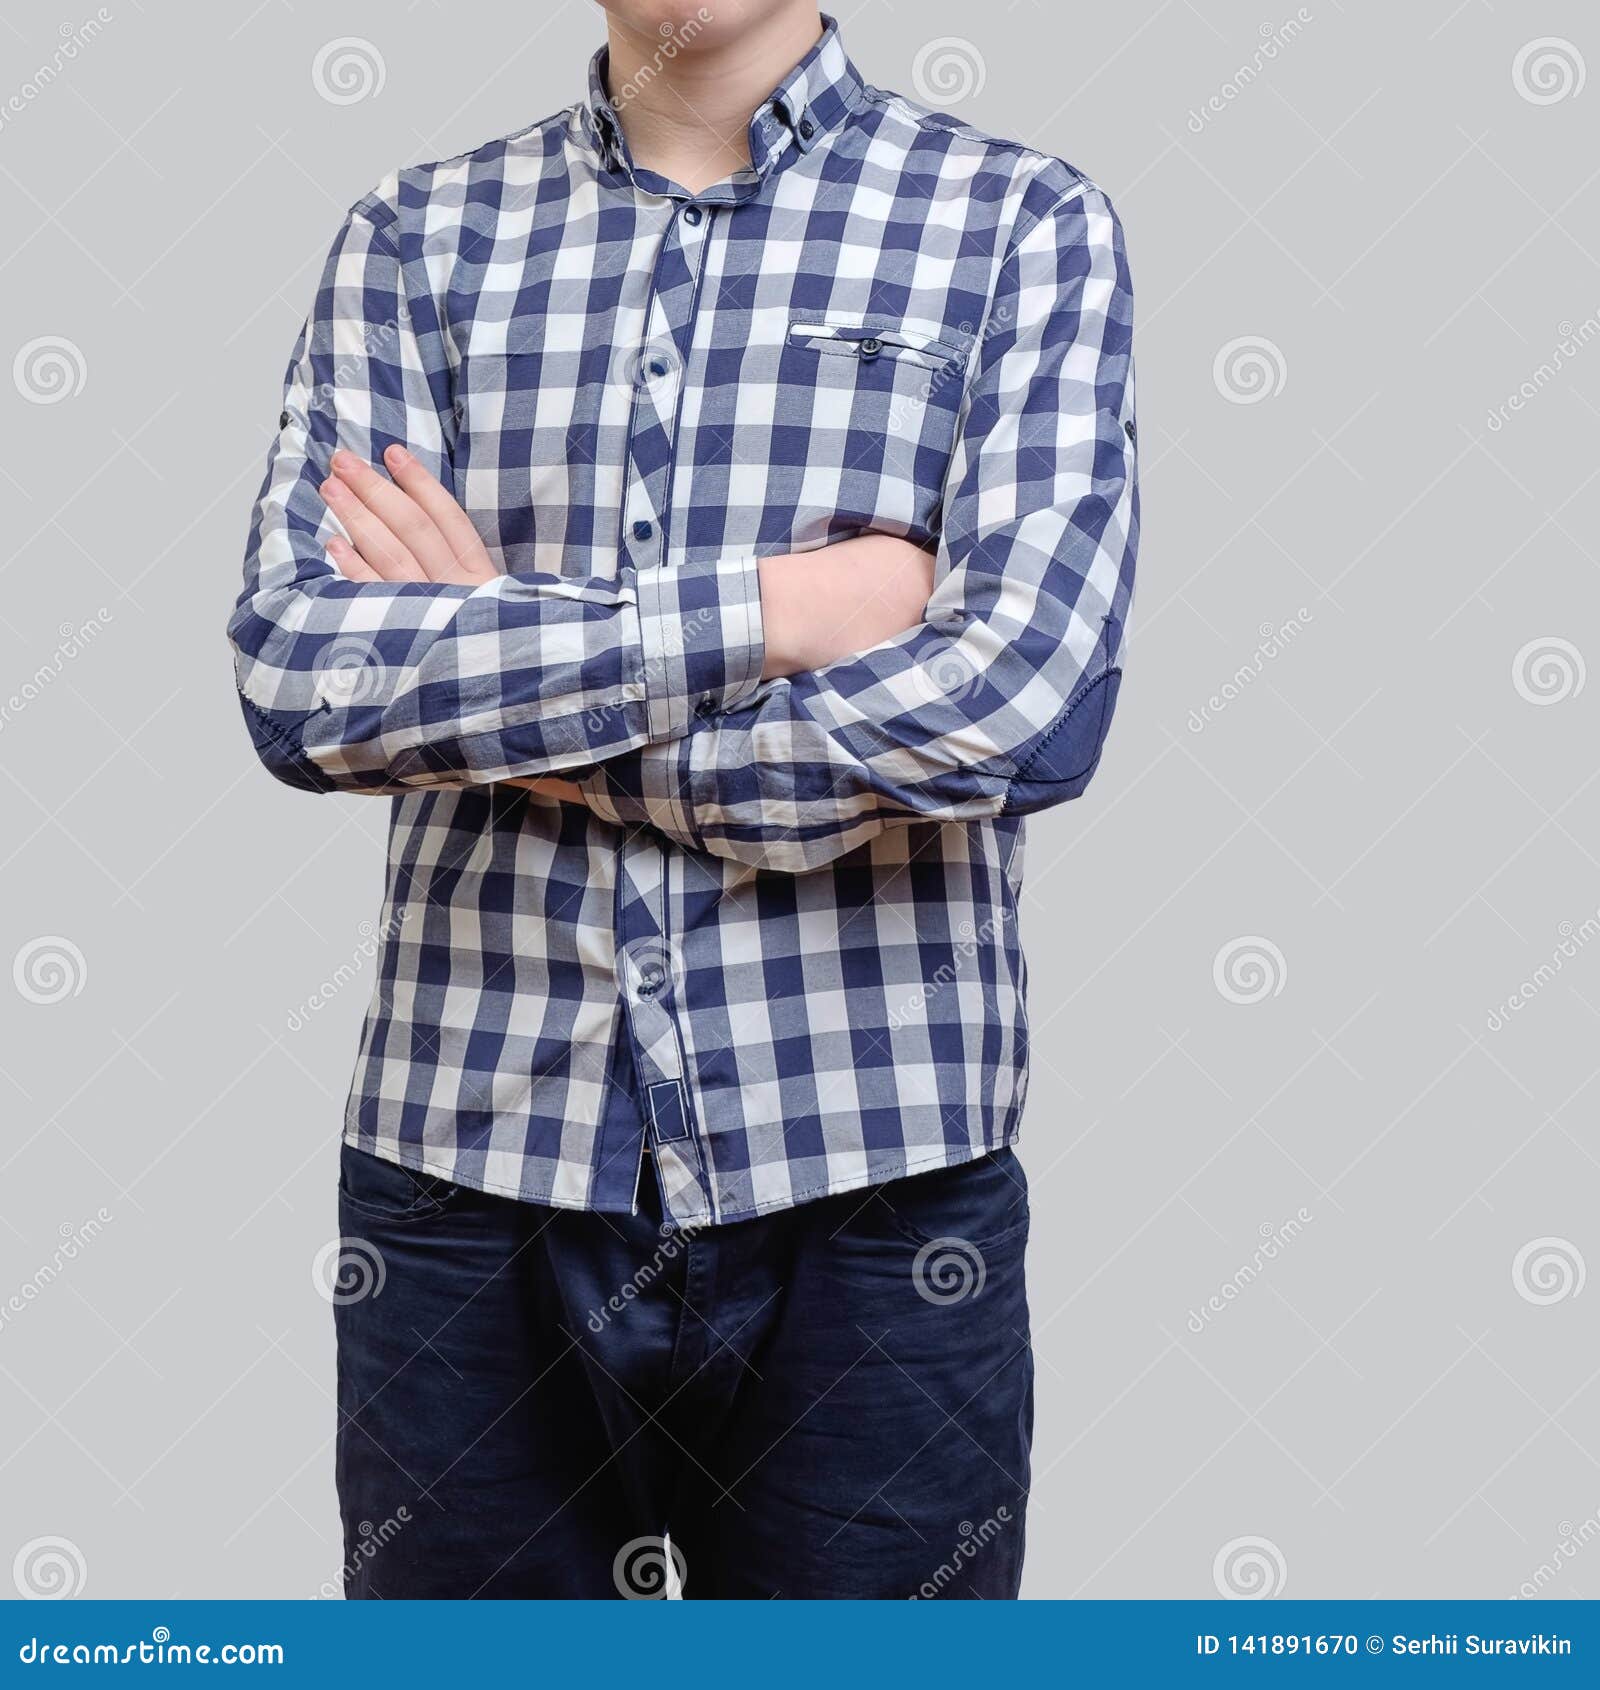 Hombre Joven De Moda Que Lleva La Camisa a Cuadros Azul, Oponiéndose a Un Foto de archivo - Imagen de gente, vaqueros: 141891670